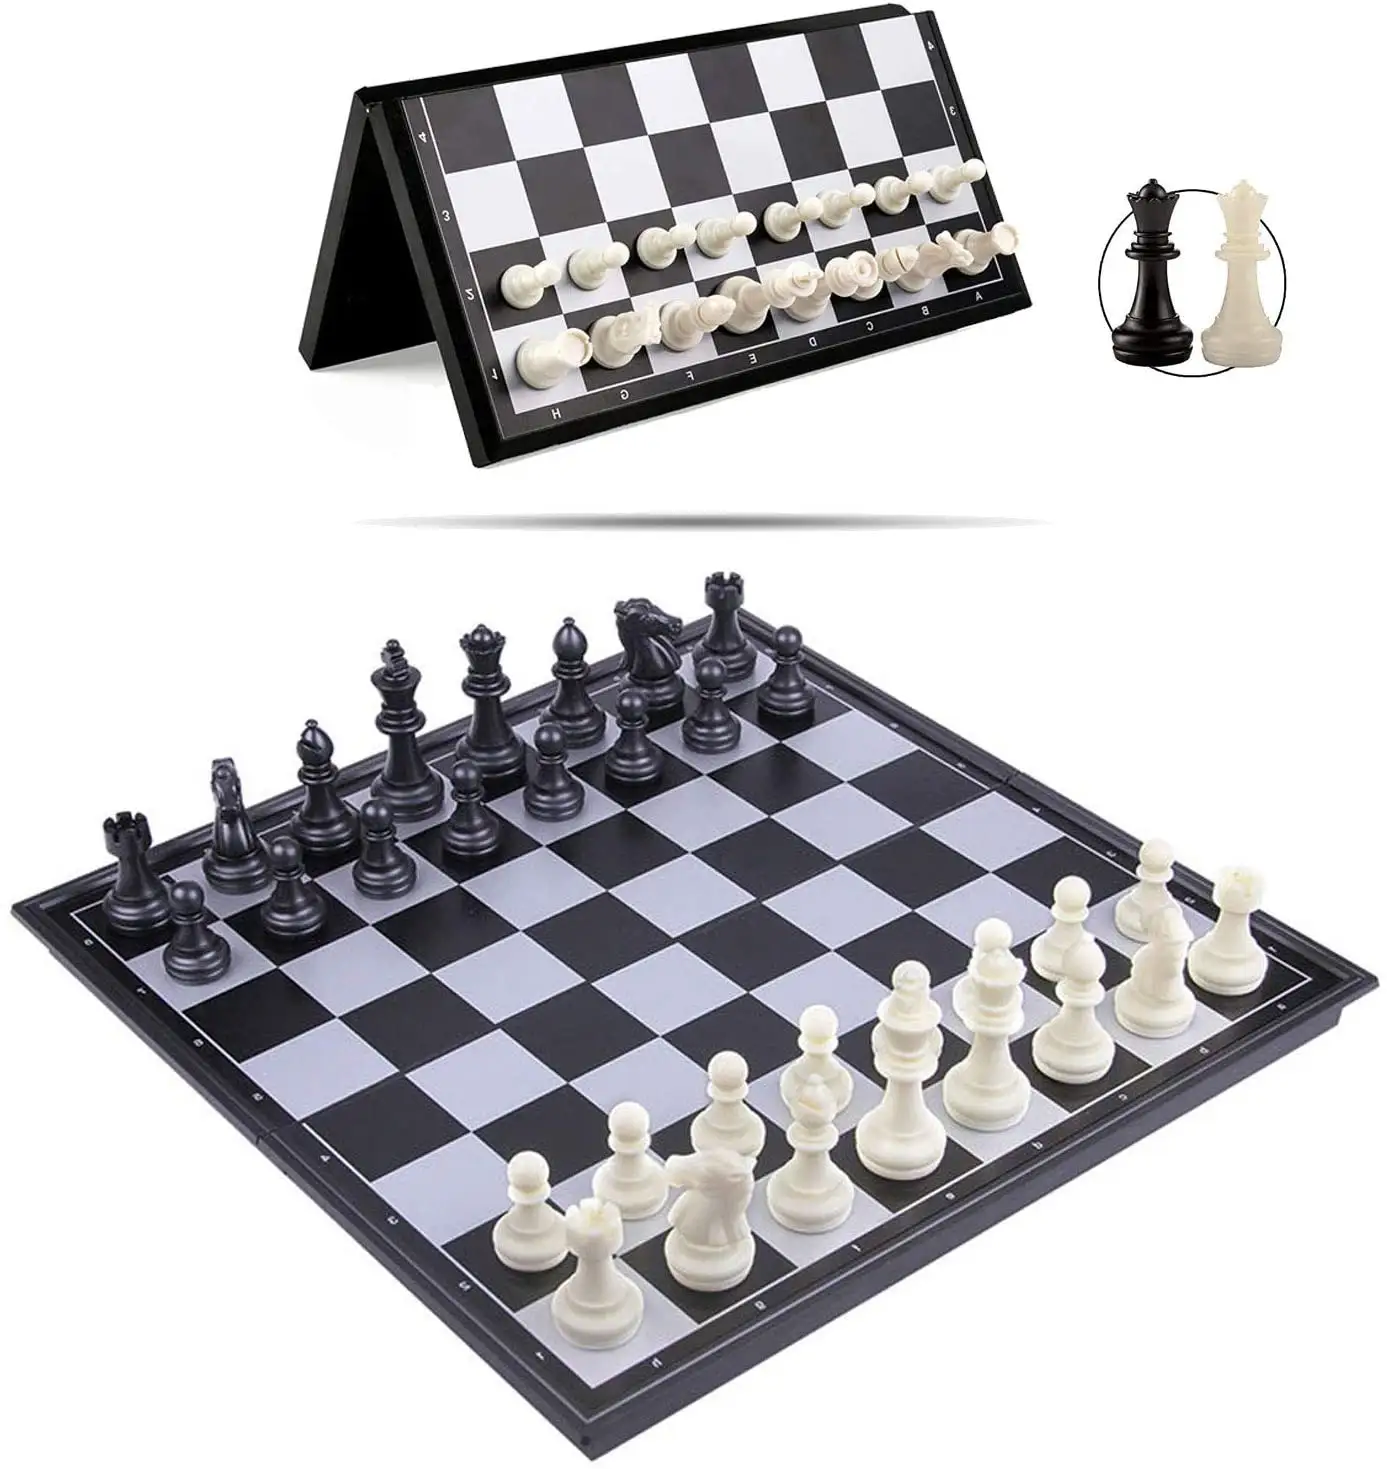 カスタムABSトーナメント25*25 * 2cmチェスボードセットゲームセット磁気高級チェスセットプラスチック